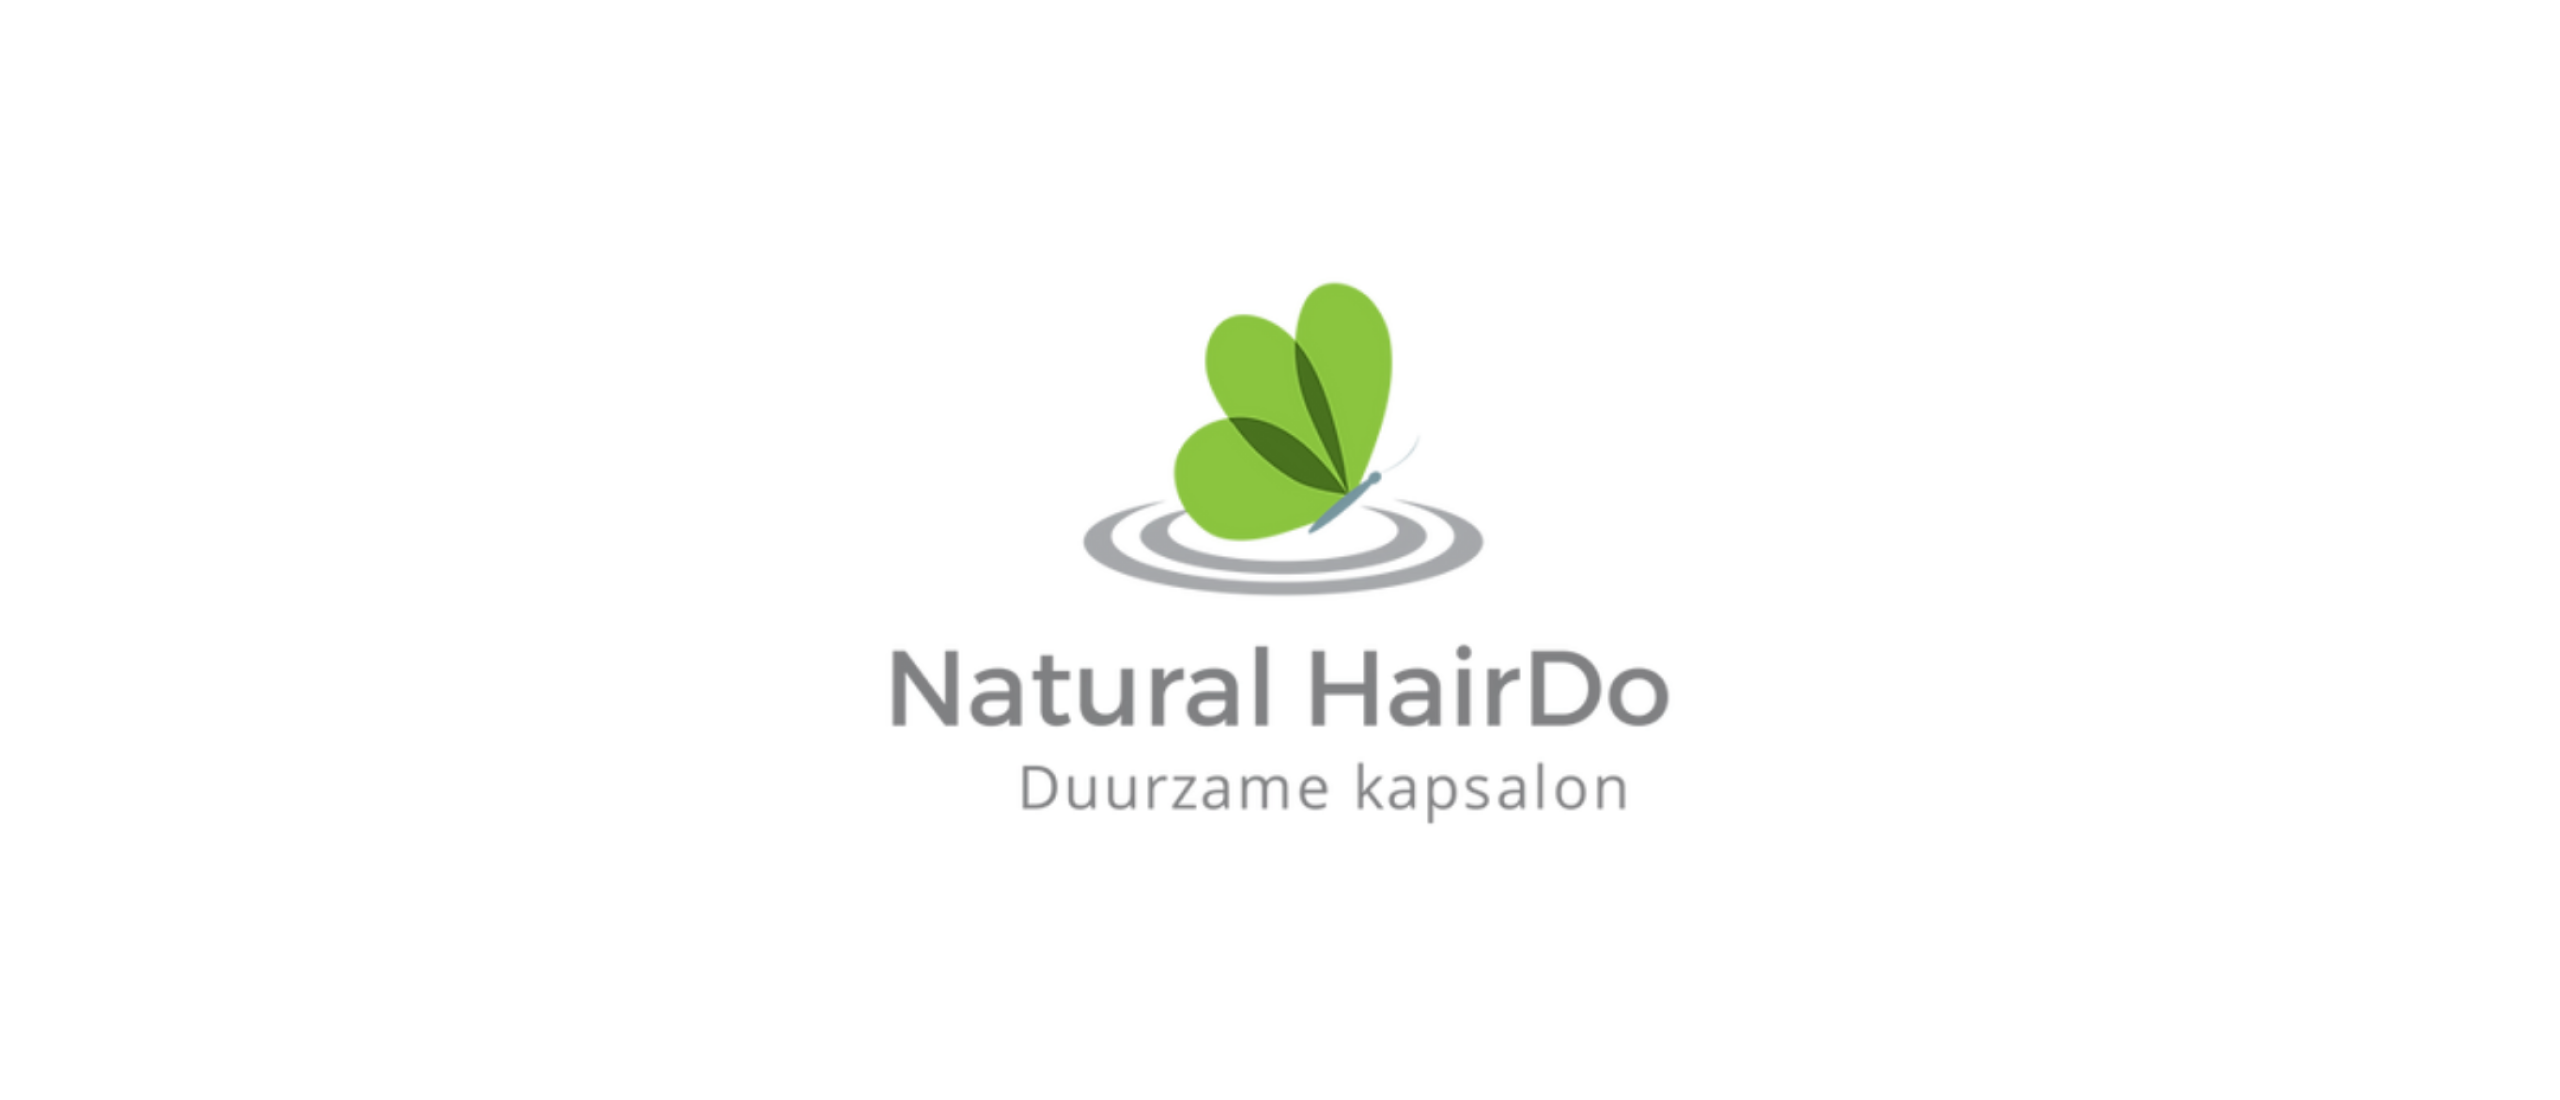 Natural HairDo: De Natuurlijke Route naar Stralend Haar